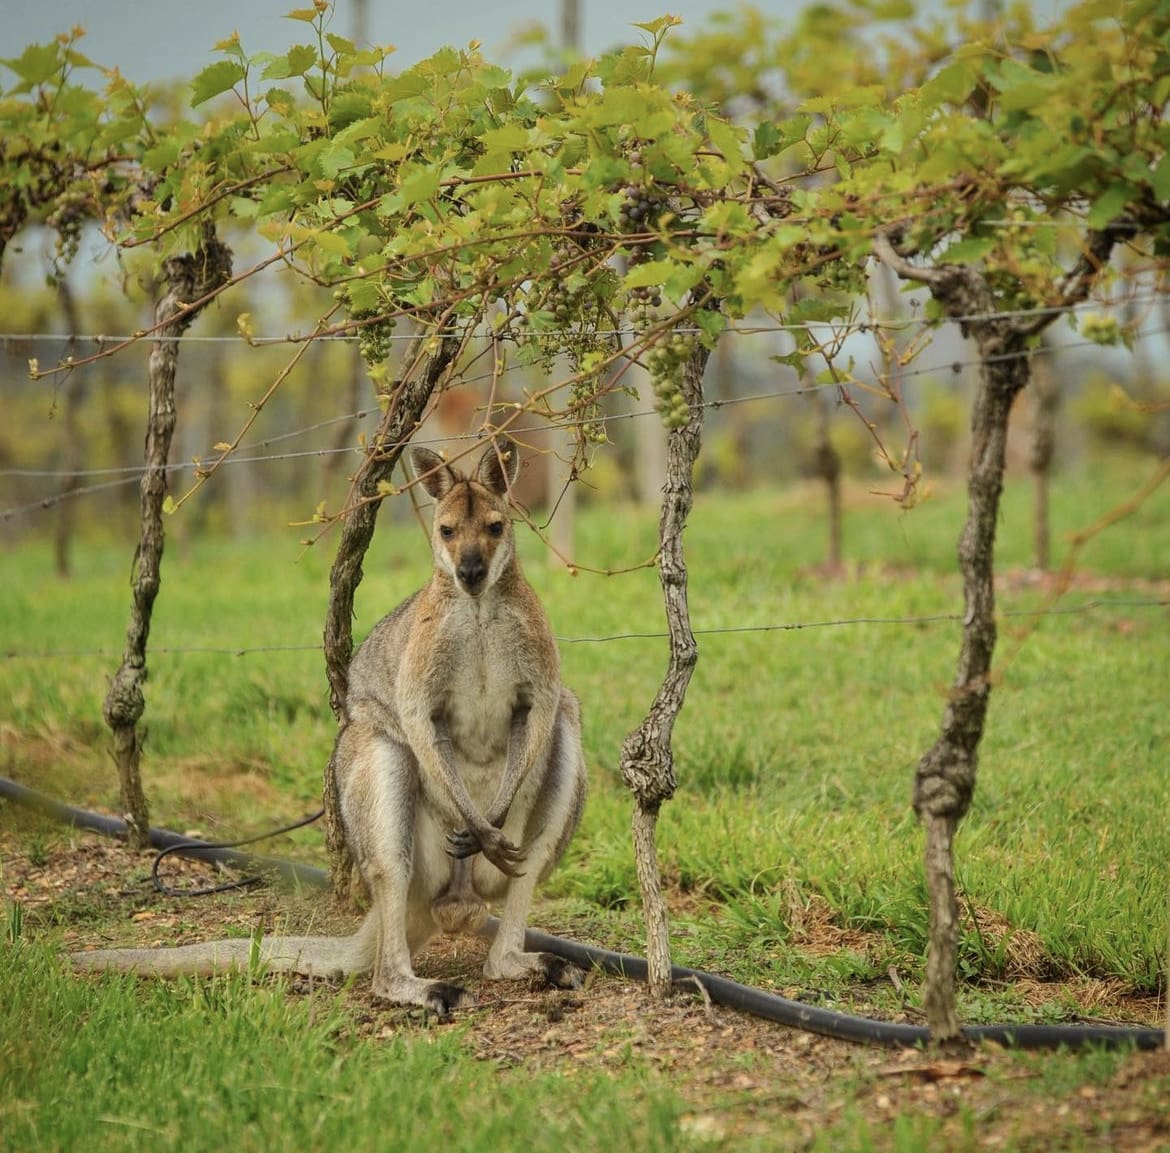 Wild kangaroo foraging in rural Australia